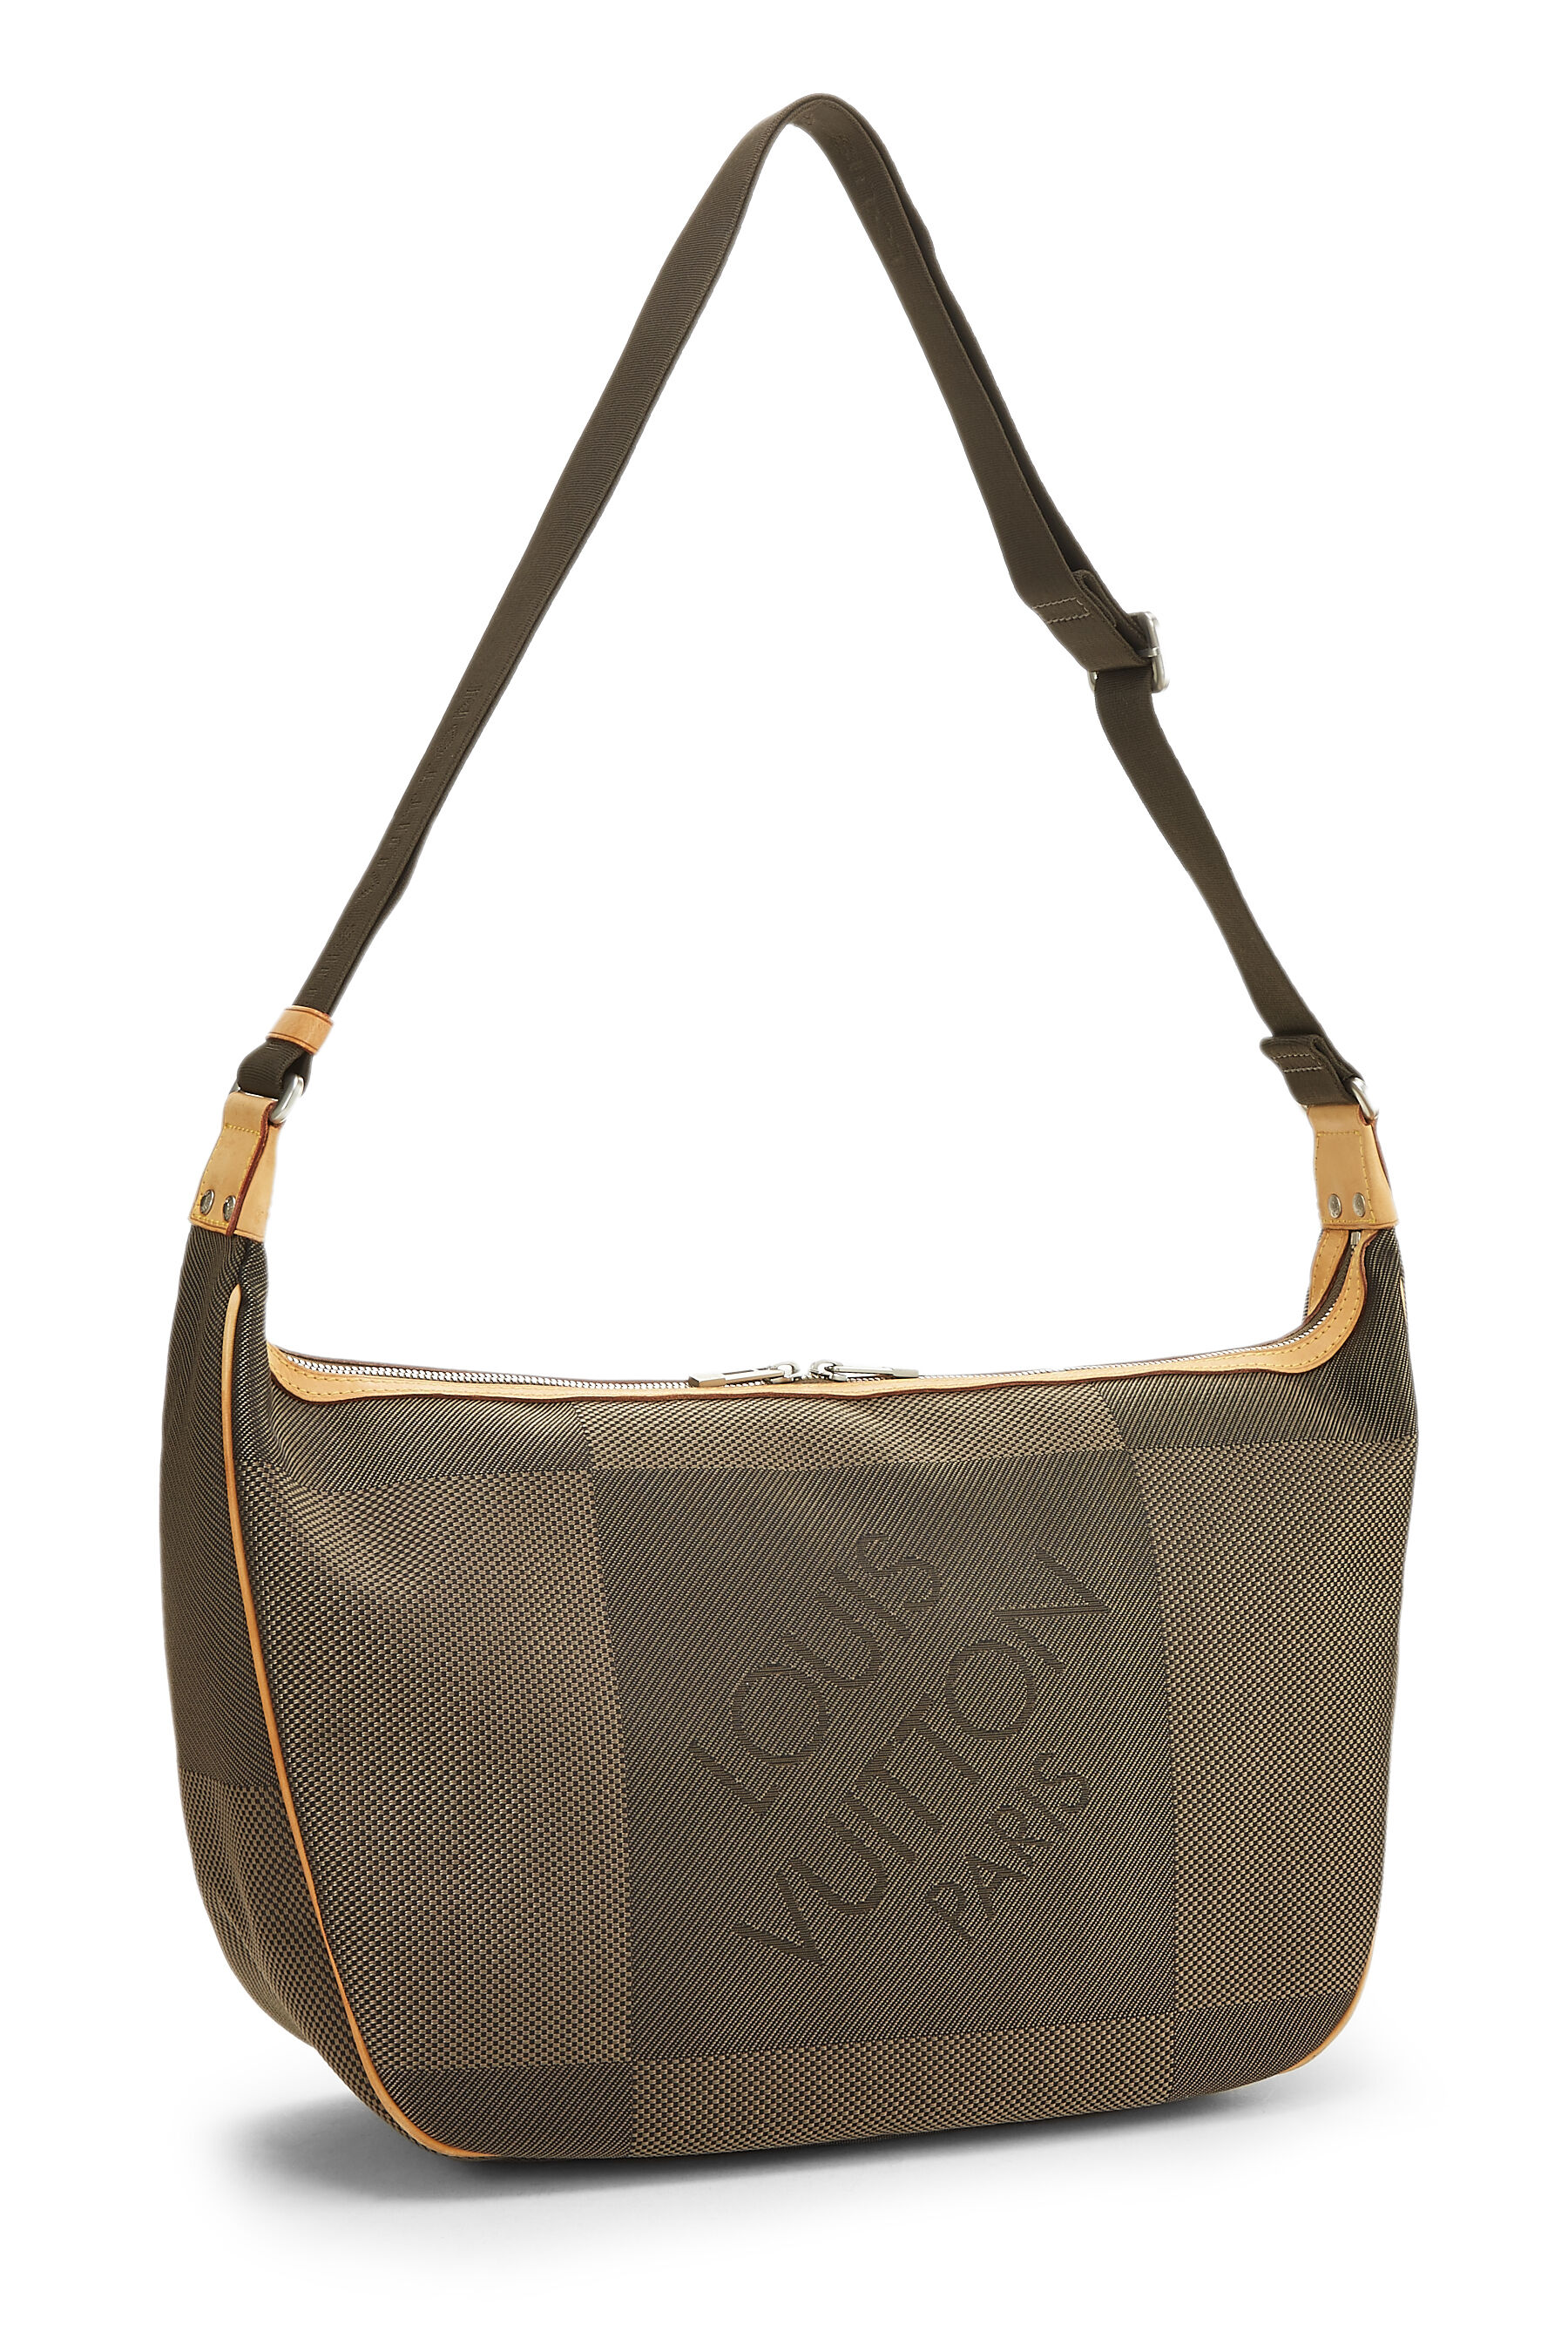 Louis Vuitton, Bags, Louis Vuitton Terre Damier Geant Canvass Messenger  Bag